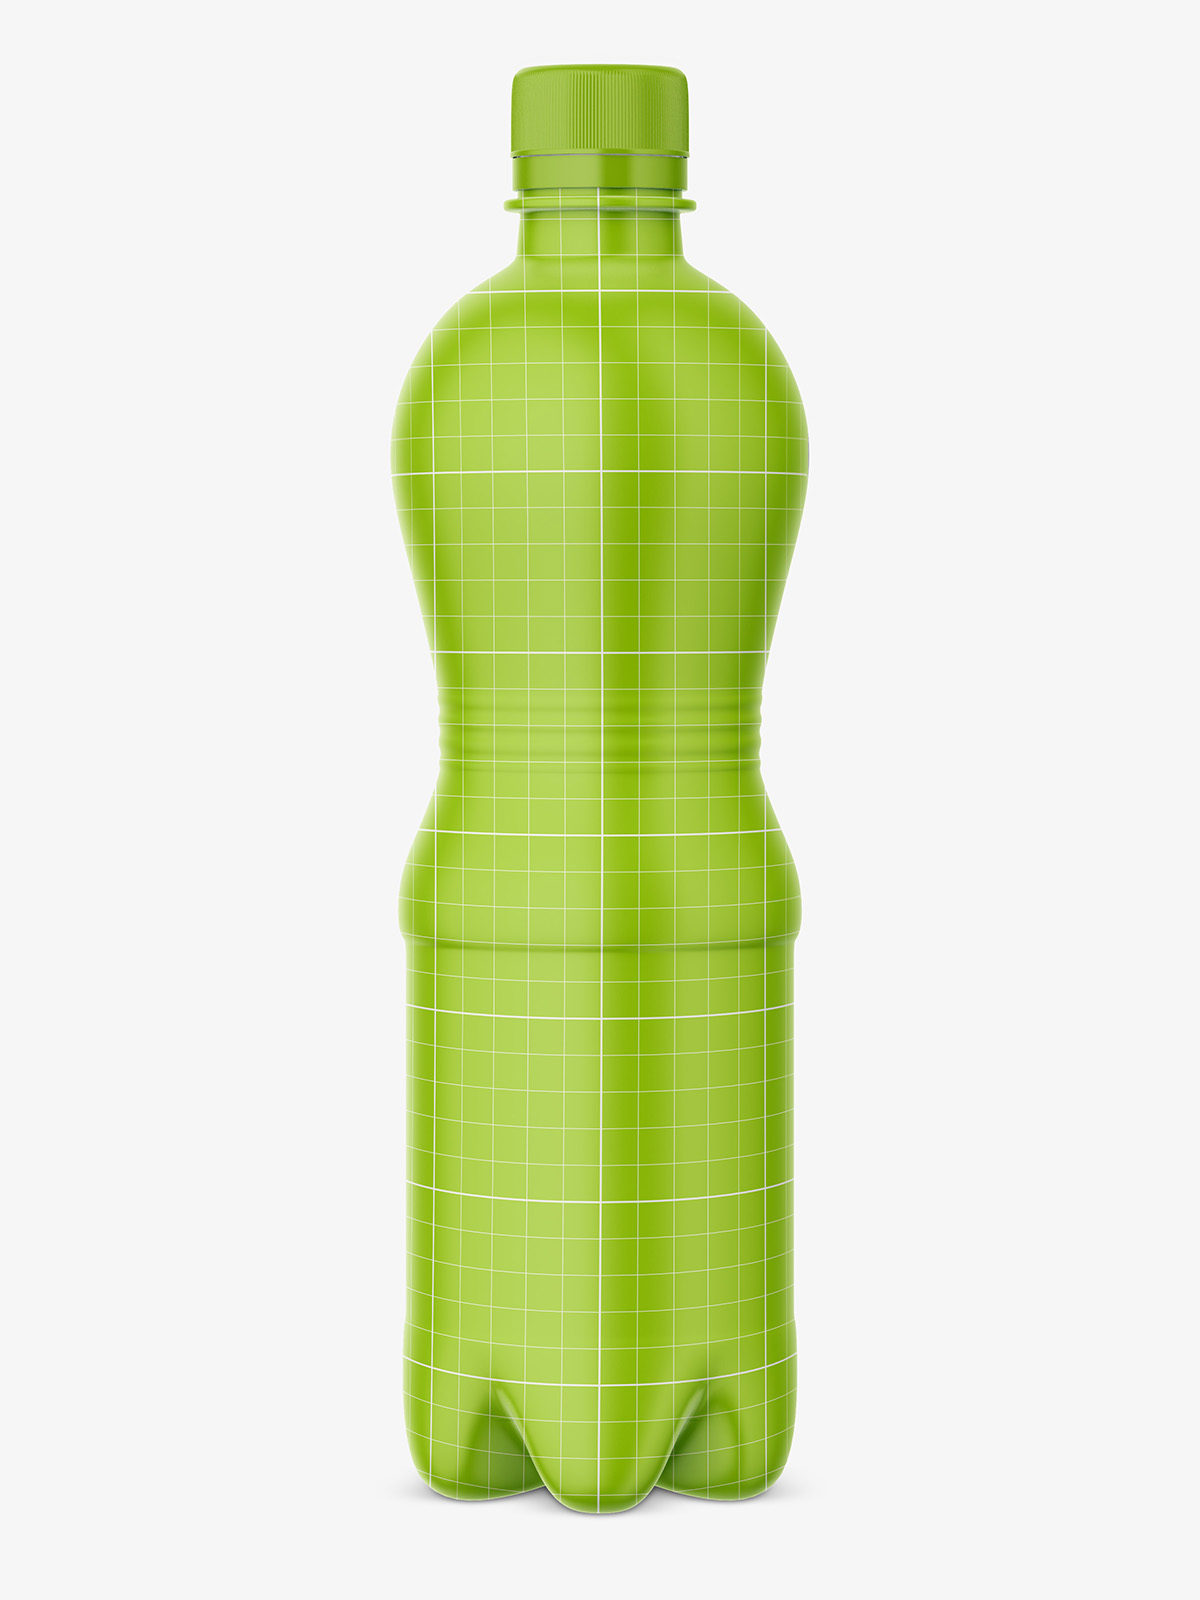 Download Plastic bottle water mockup - Smarty Mockups